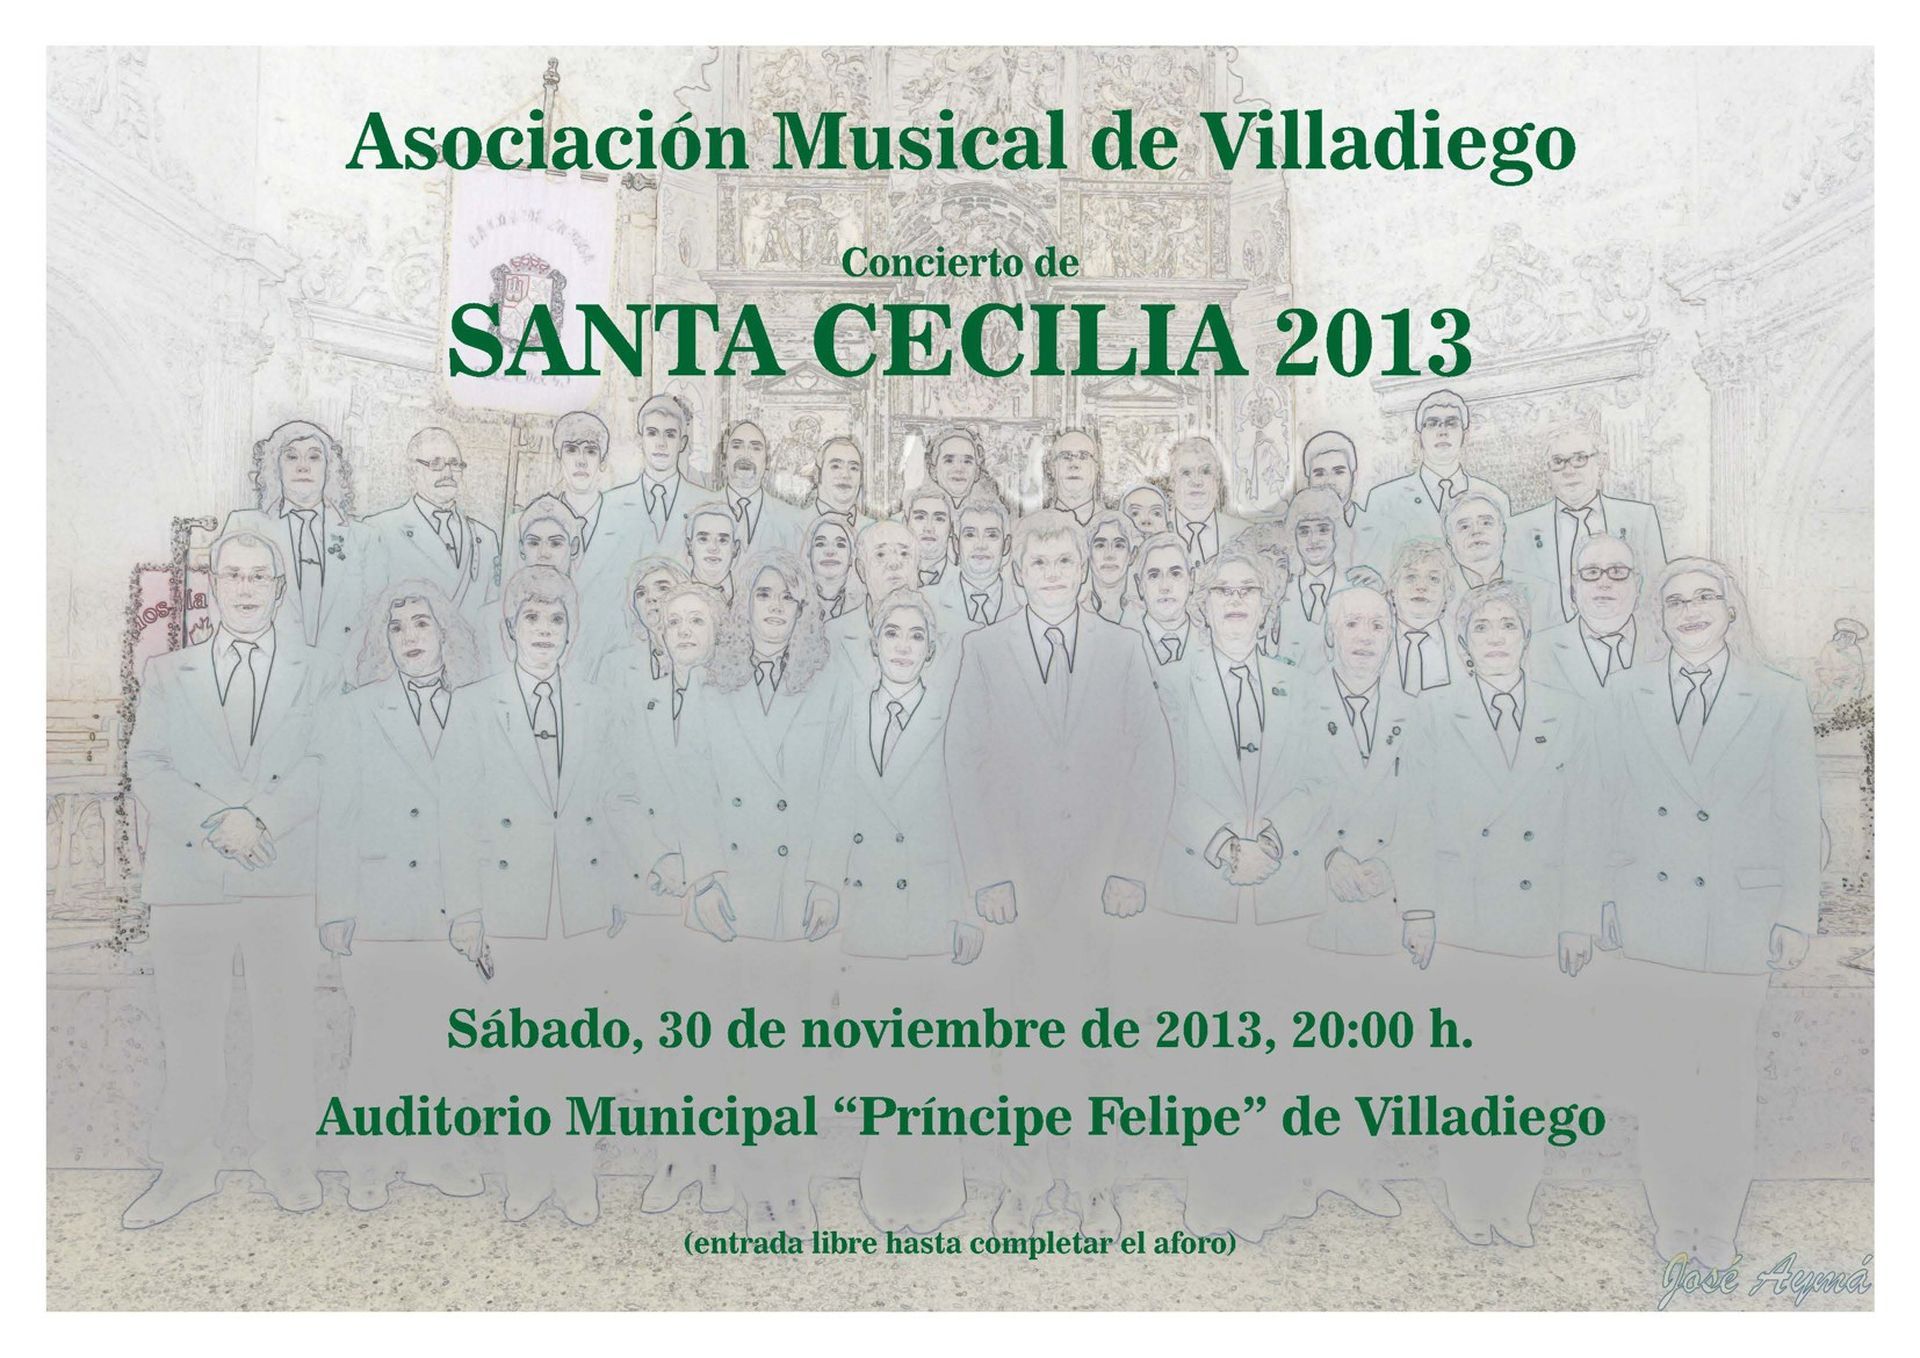 Asociación Musical de Villadiego - Banda y Escuela de Música